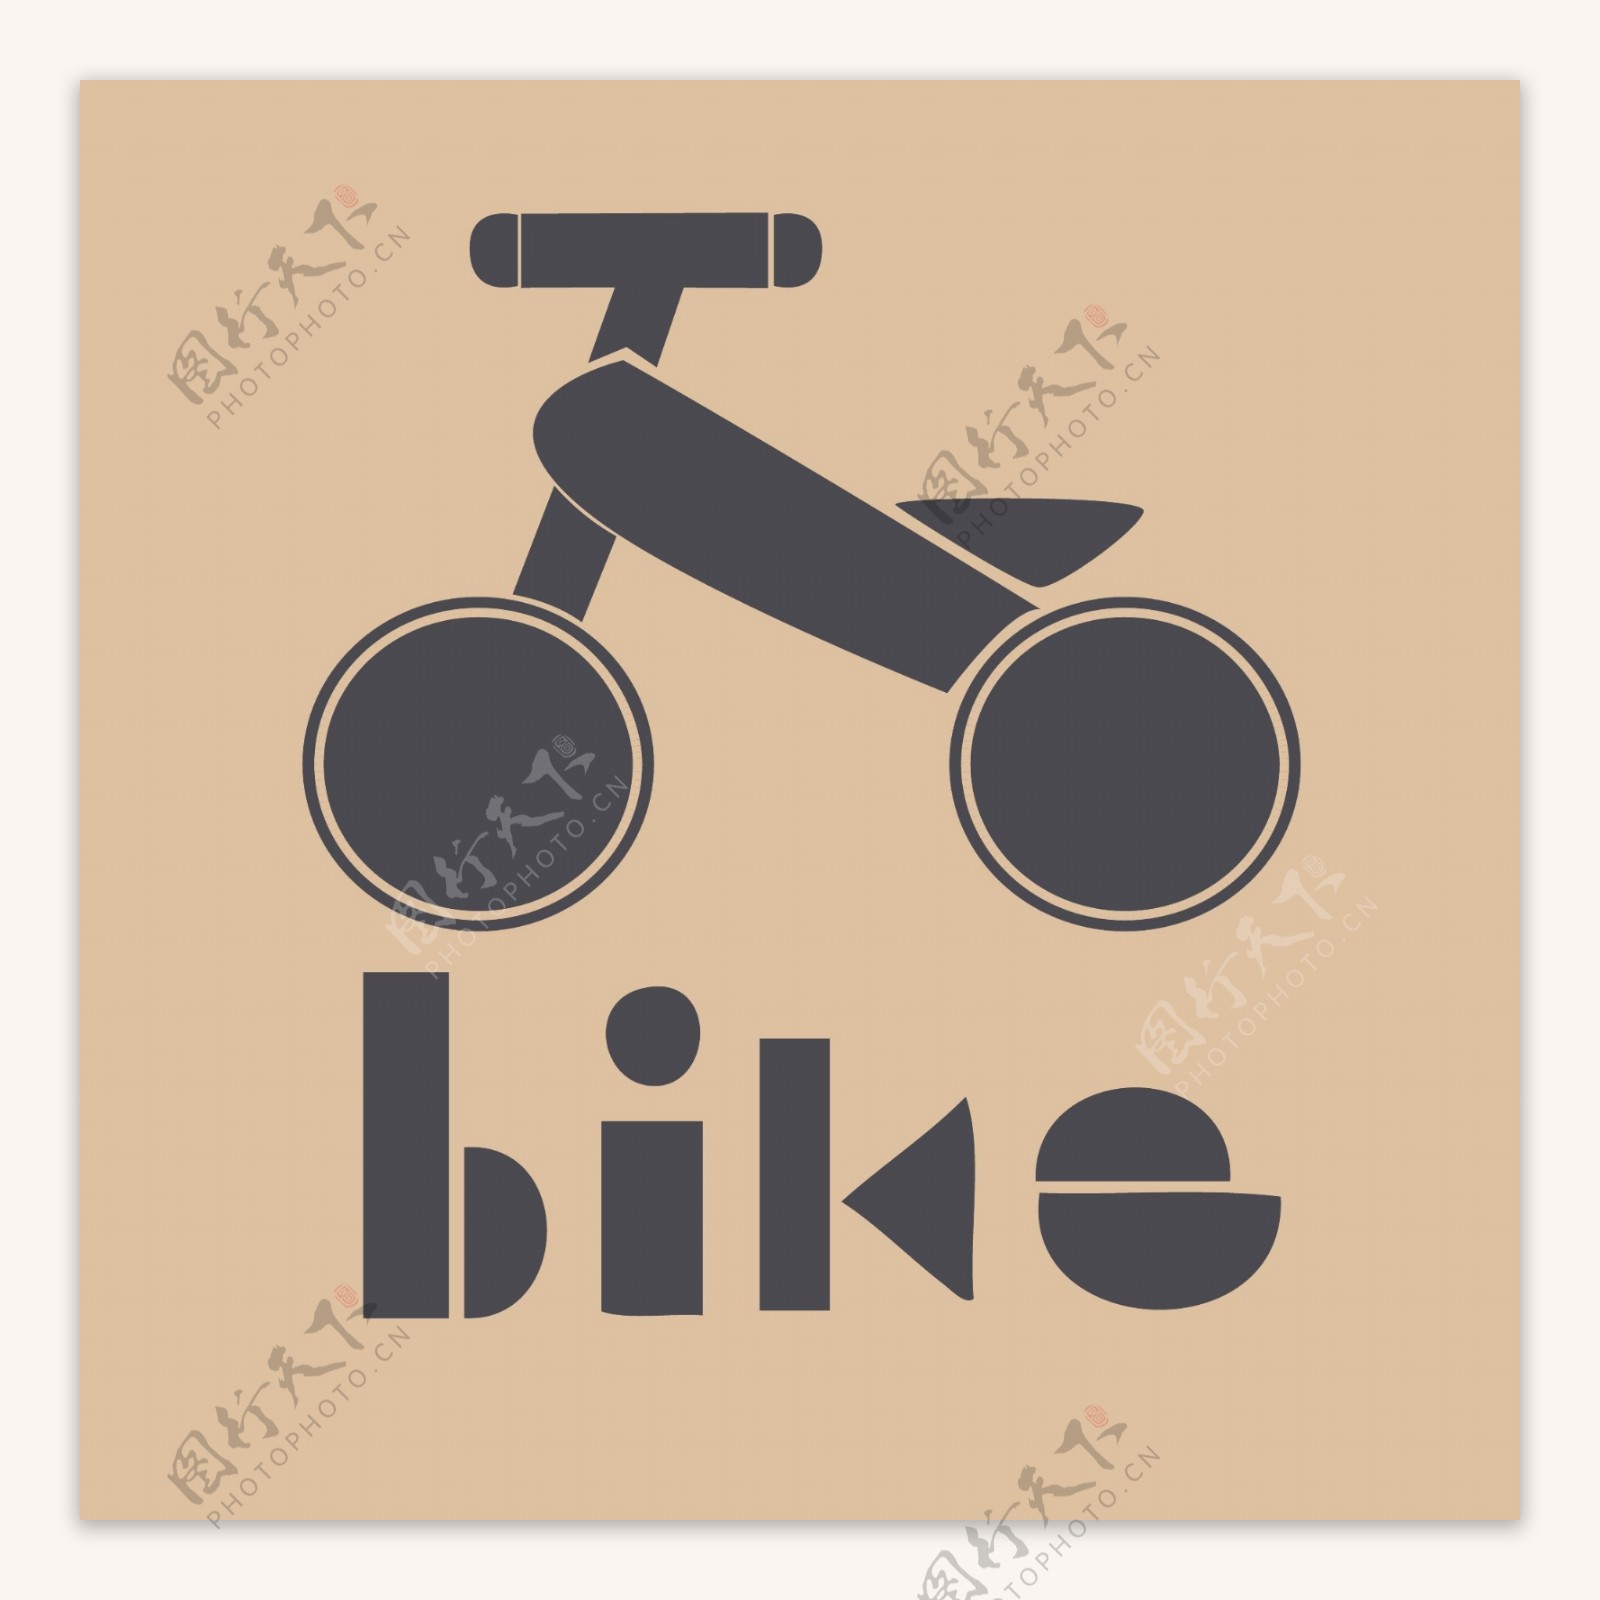 印花矢量图交通工具自行车文字英文免费素材